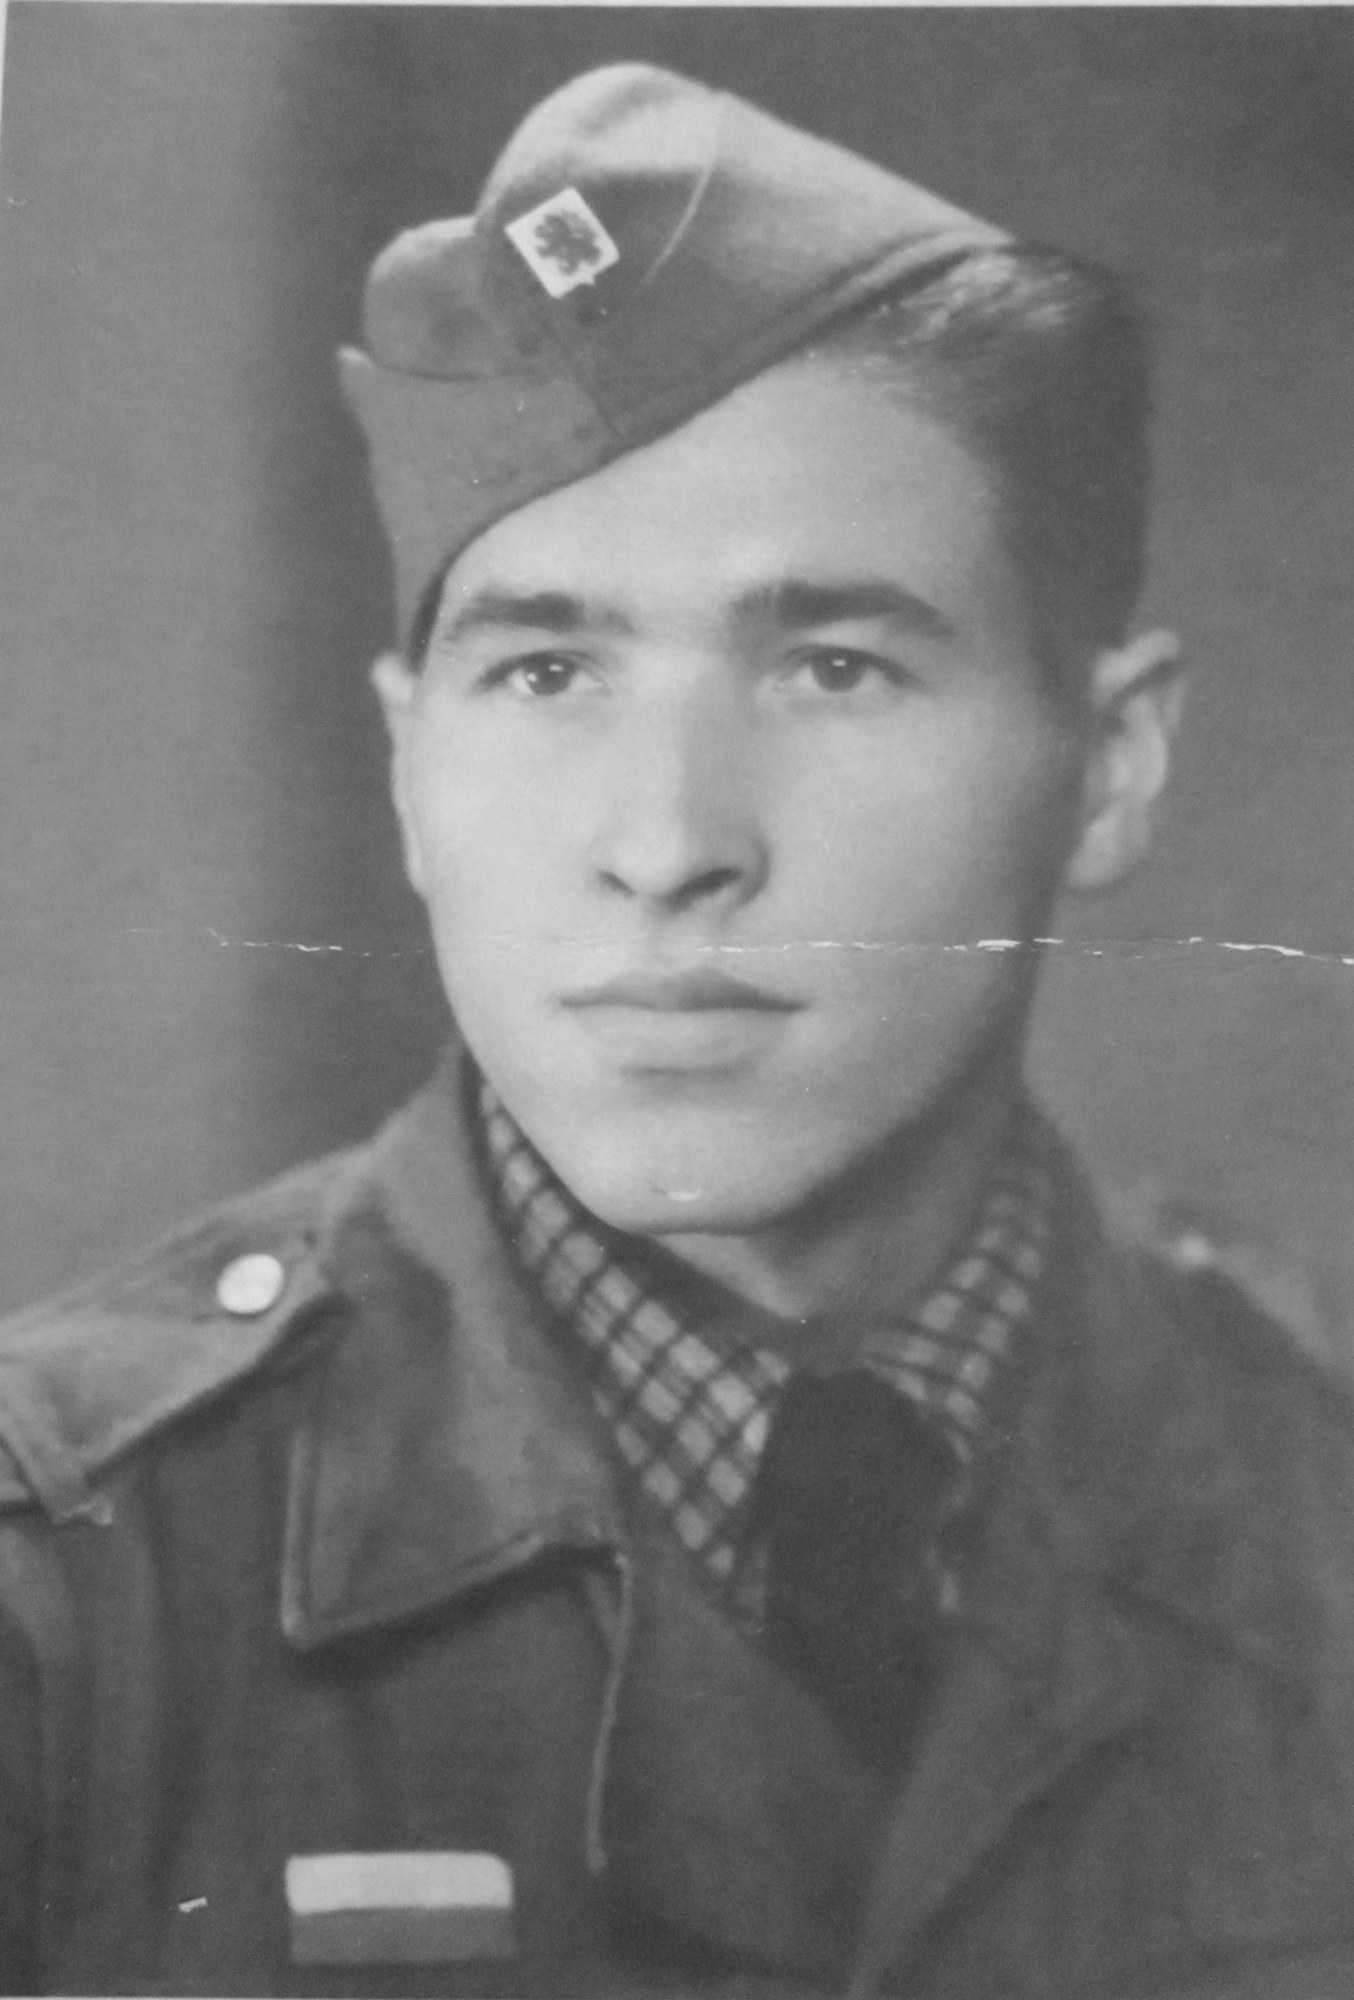 Vasil Coka v československé armádě v roce 1945.JPG (historic)